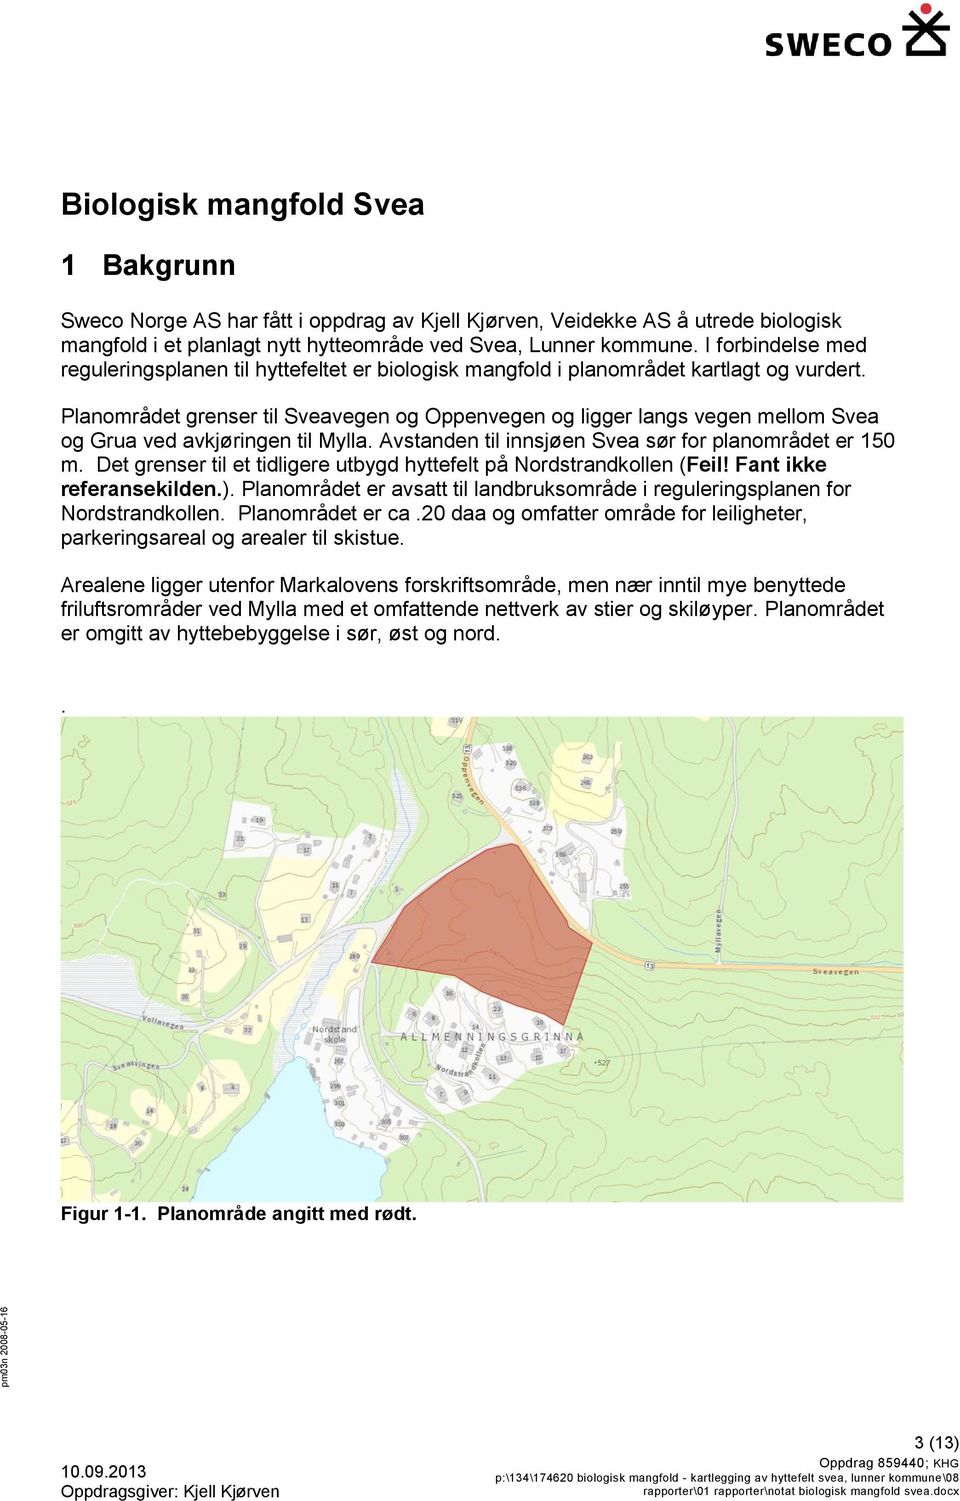 Planområdet grenser til Sveavegen og Oppenvegen og ligger langs vegen mellom Svea og Grua ved avkjøringen til Mylla. Avstanden til innsjøen Svea sør for planområdet er 150 m.